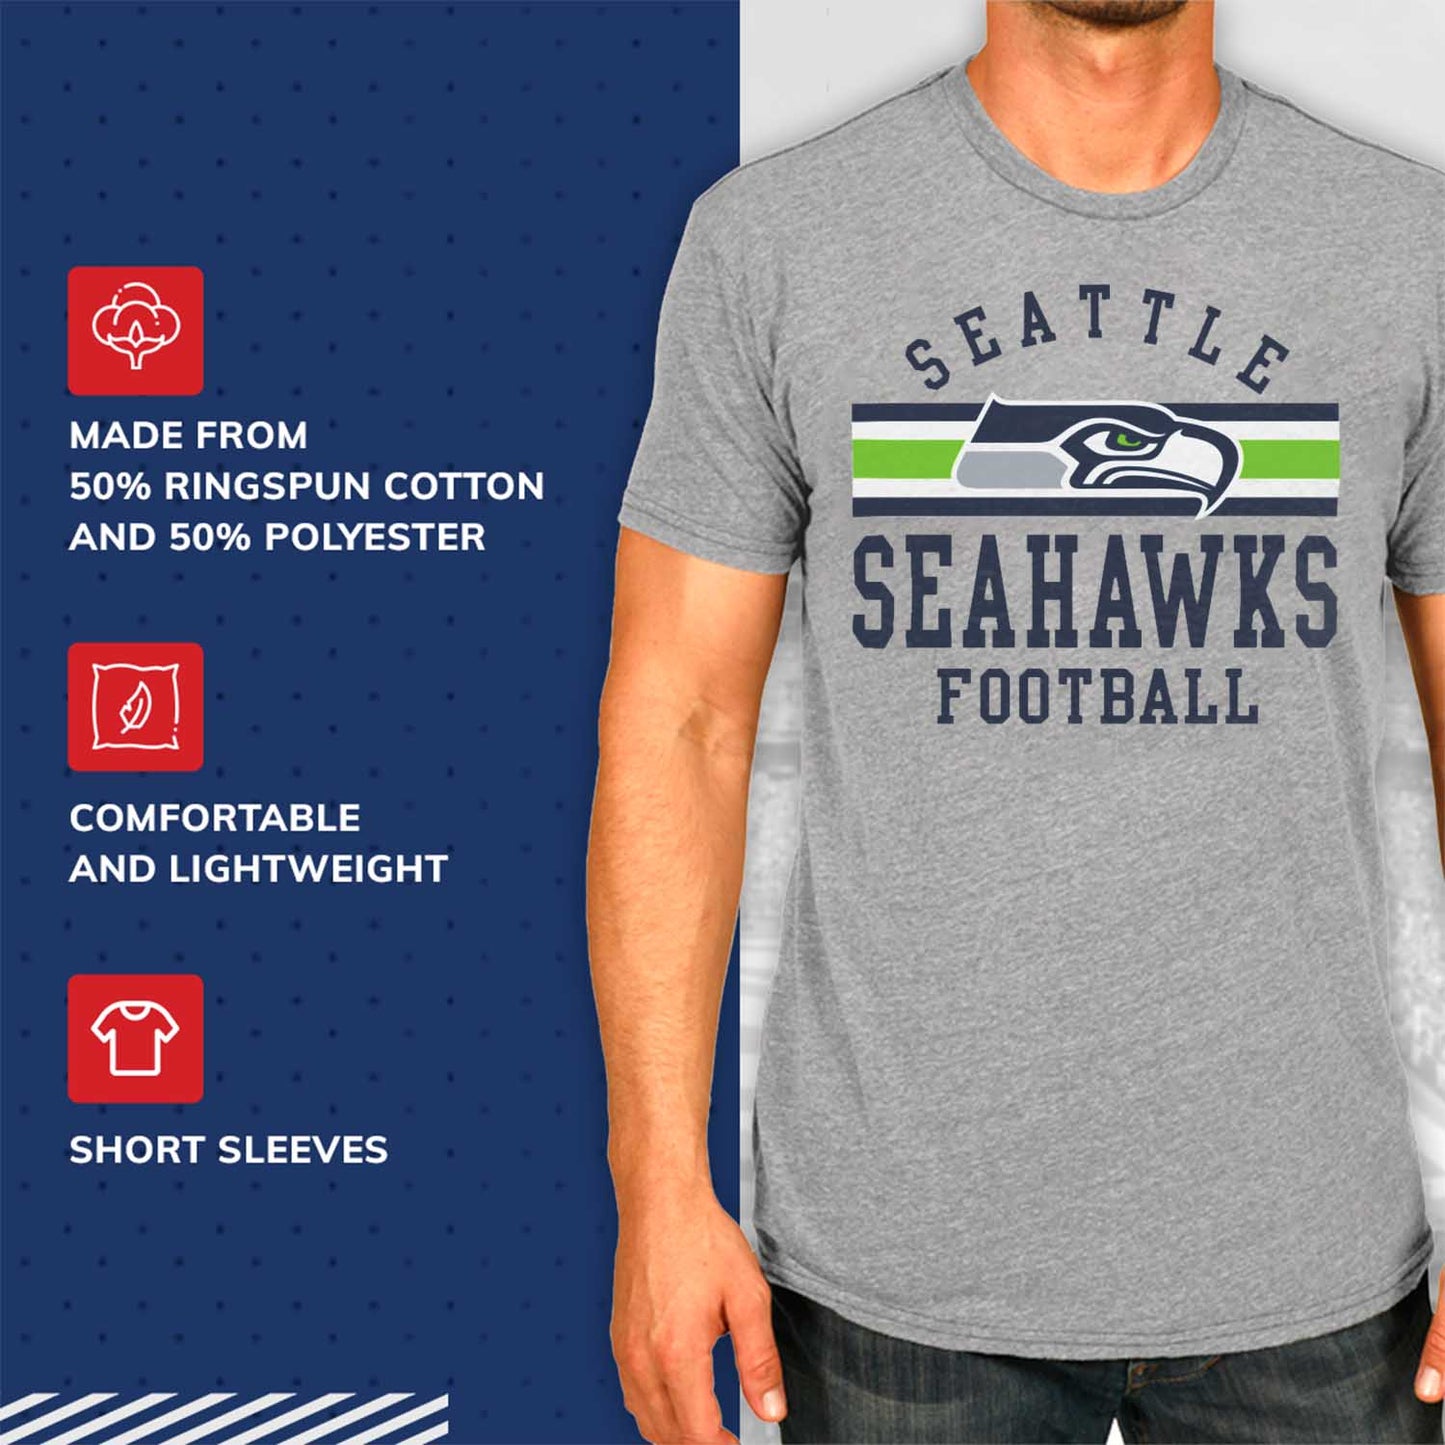 Seattle Seahawks NFL Adult Short Sleeve Team Stripe Tee - Sport Gray